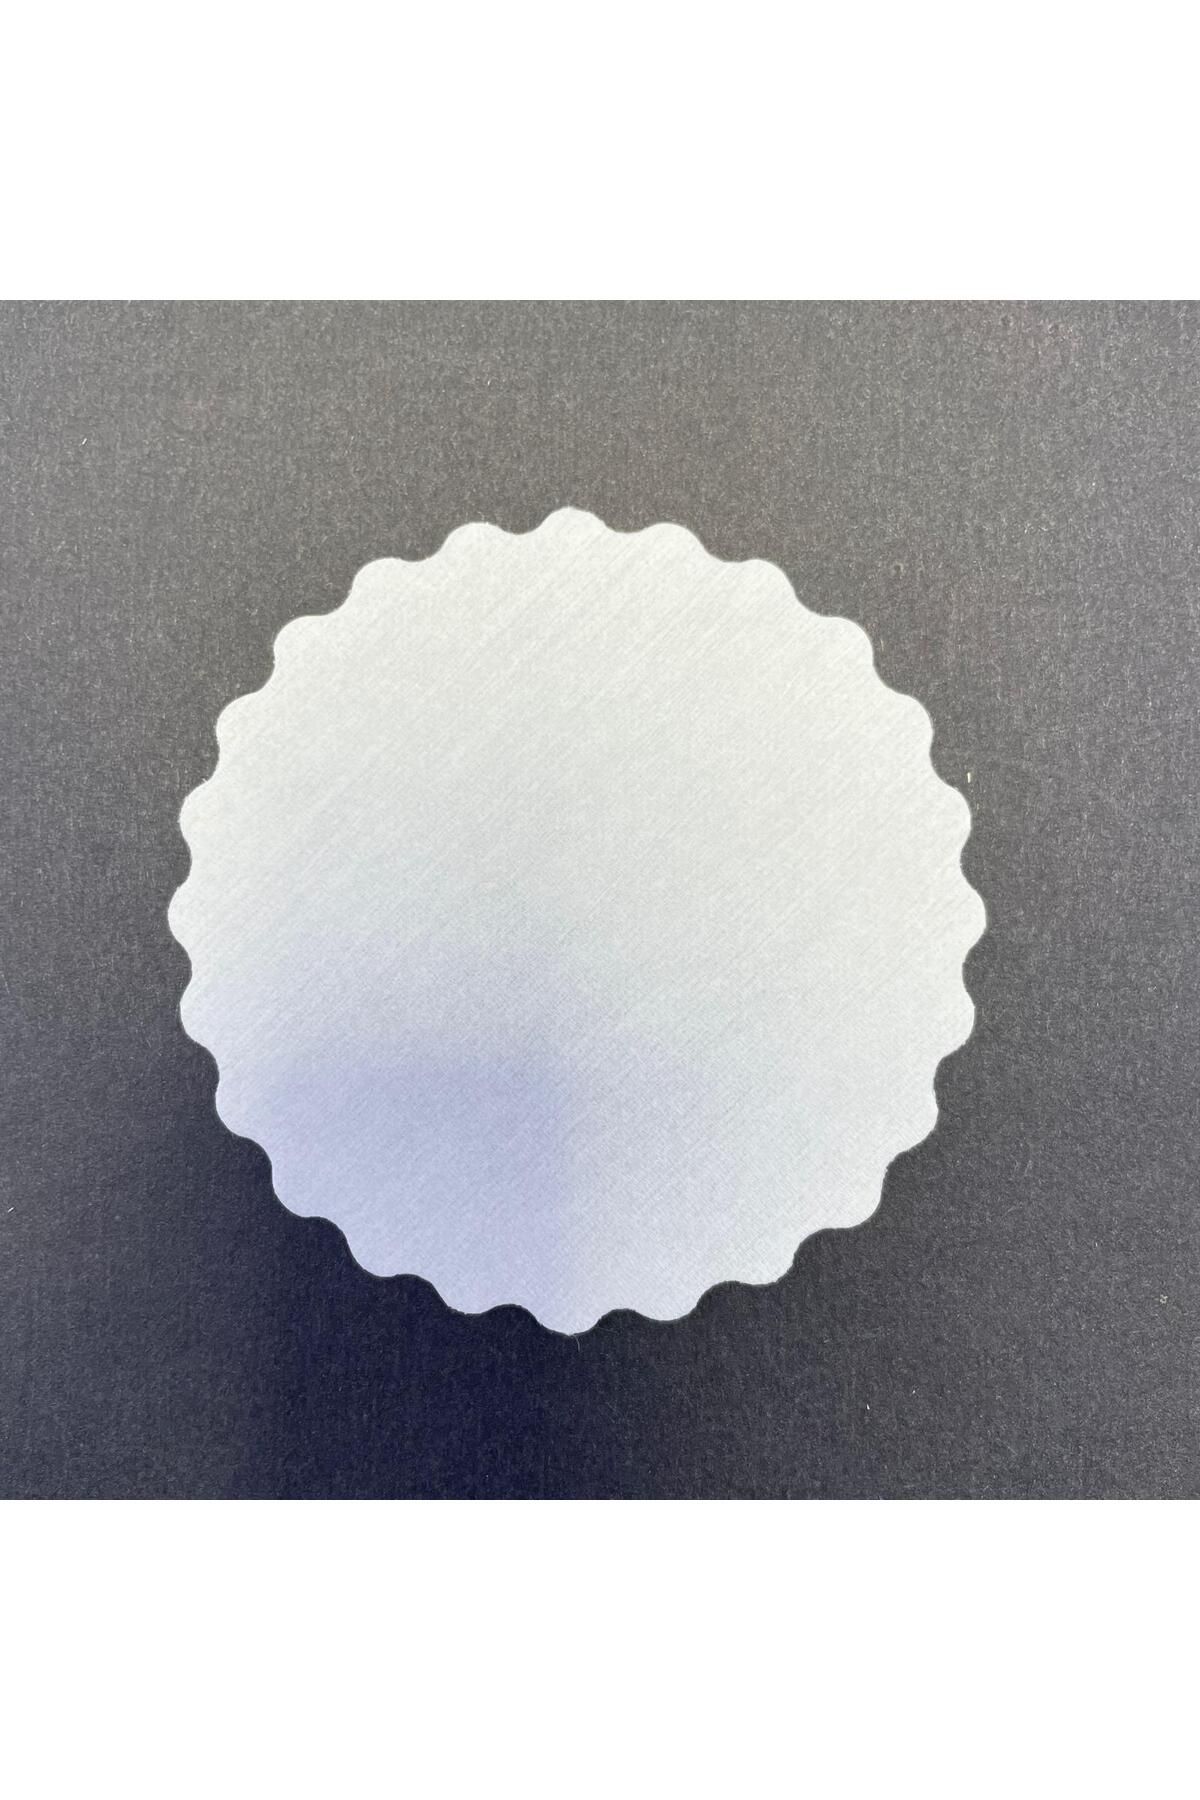 PRİVATE 100 Adet Tek Kullanımlık Beyaz Desenli Kağıt Bardak Altlığı 80 mm